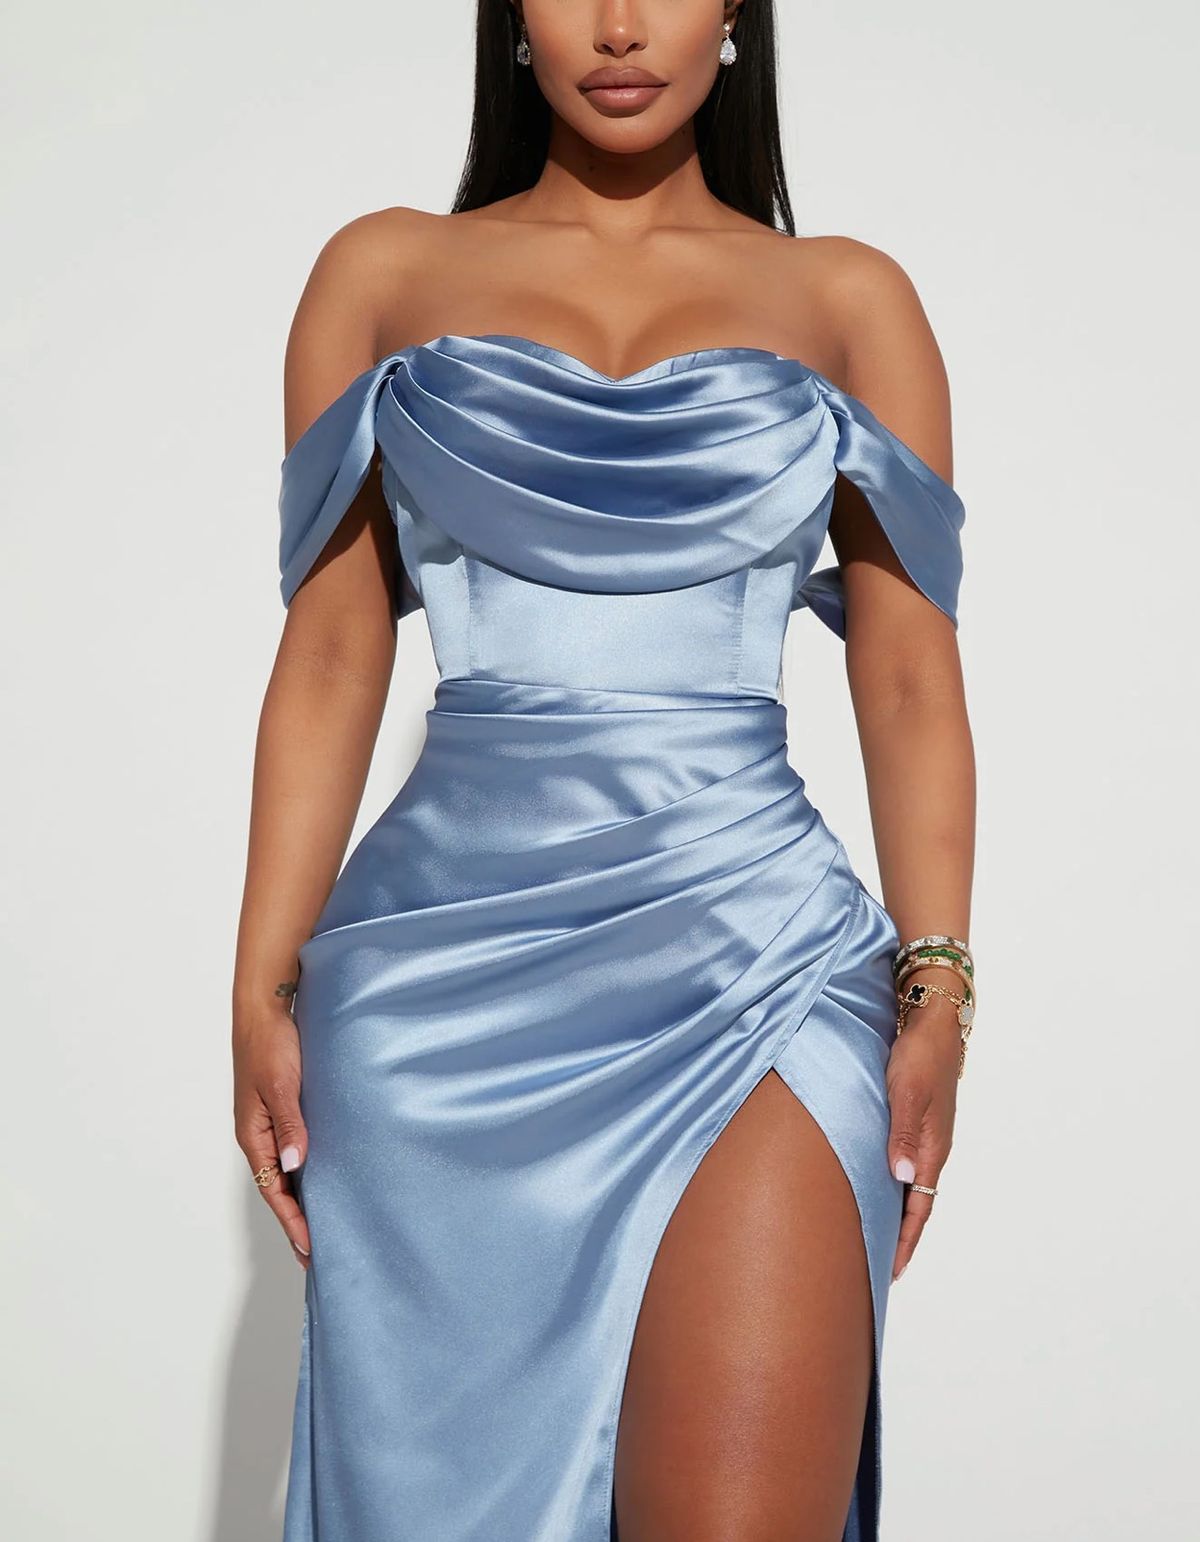 Fashion Nova Size S Prom Off The Shoulder Blue Side Slit Dress on Queenly